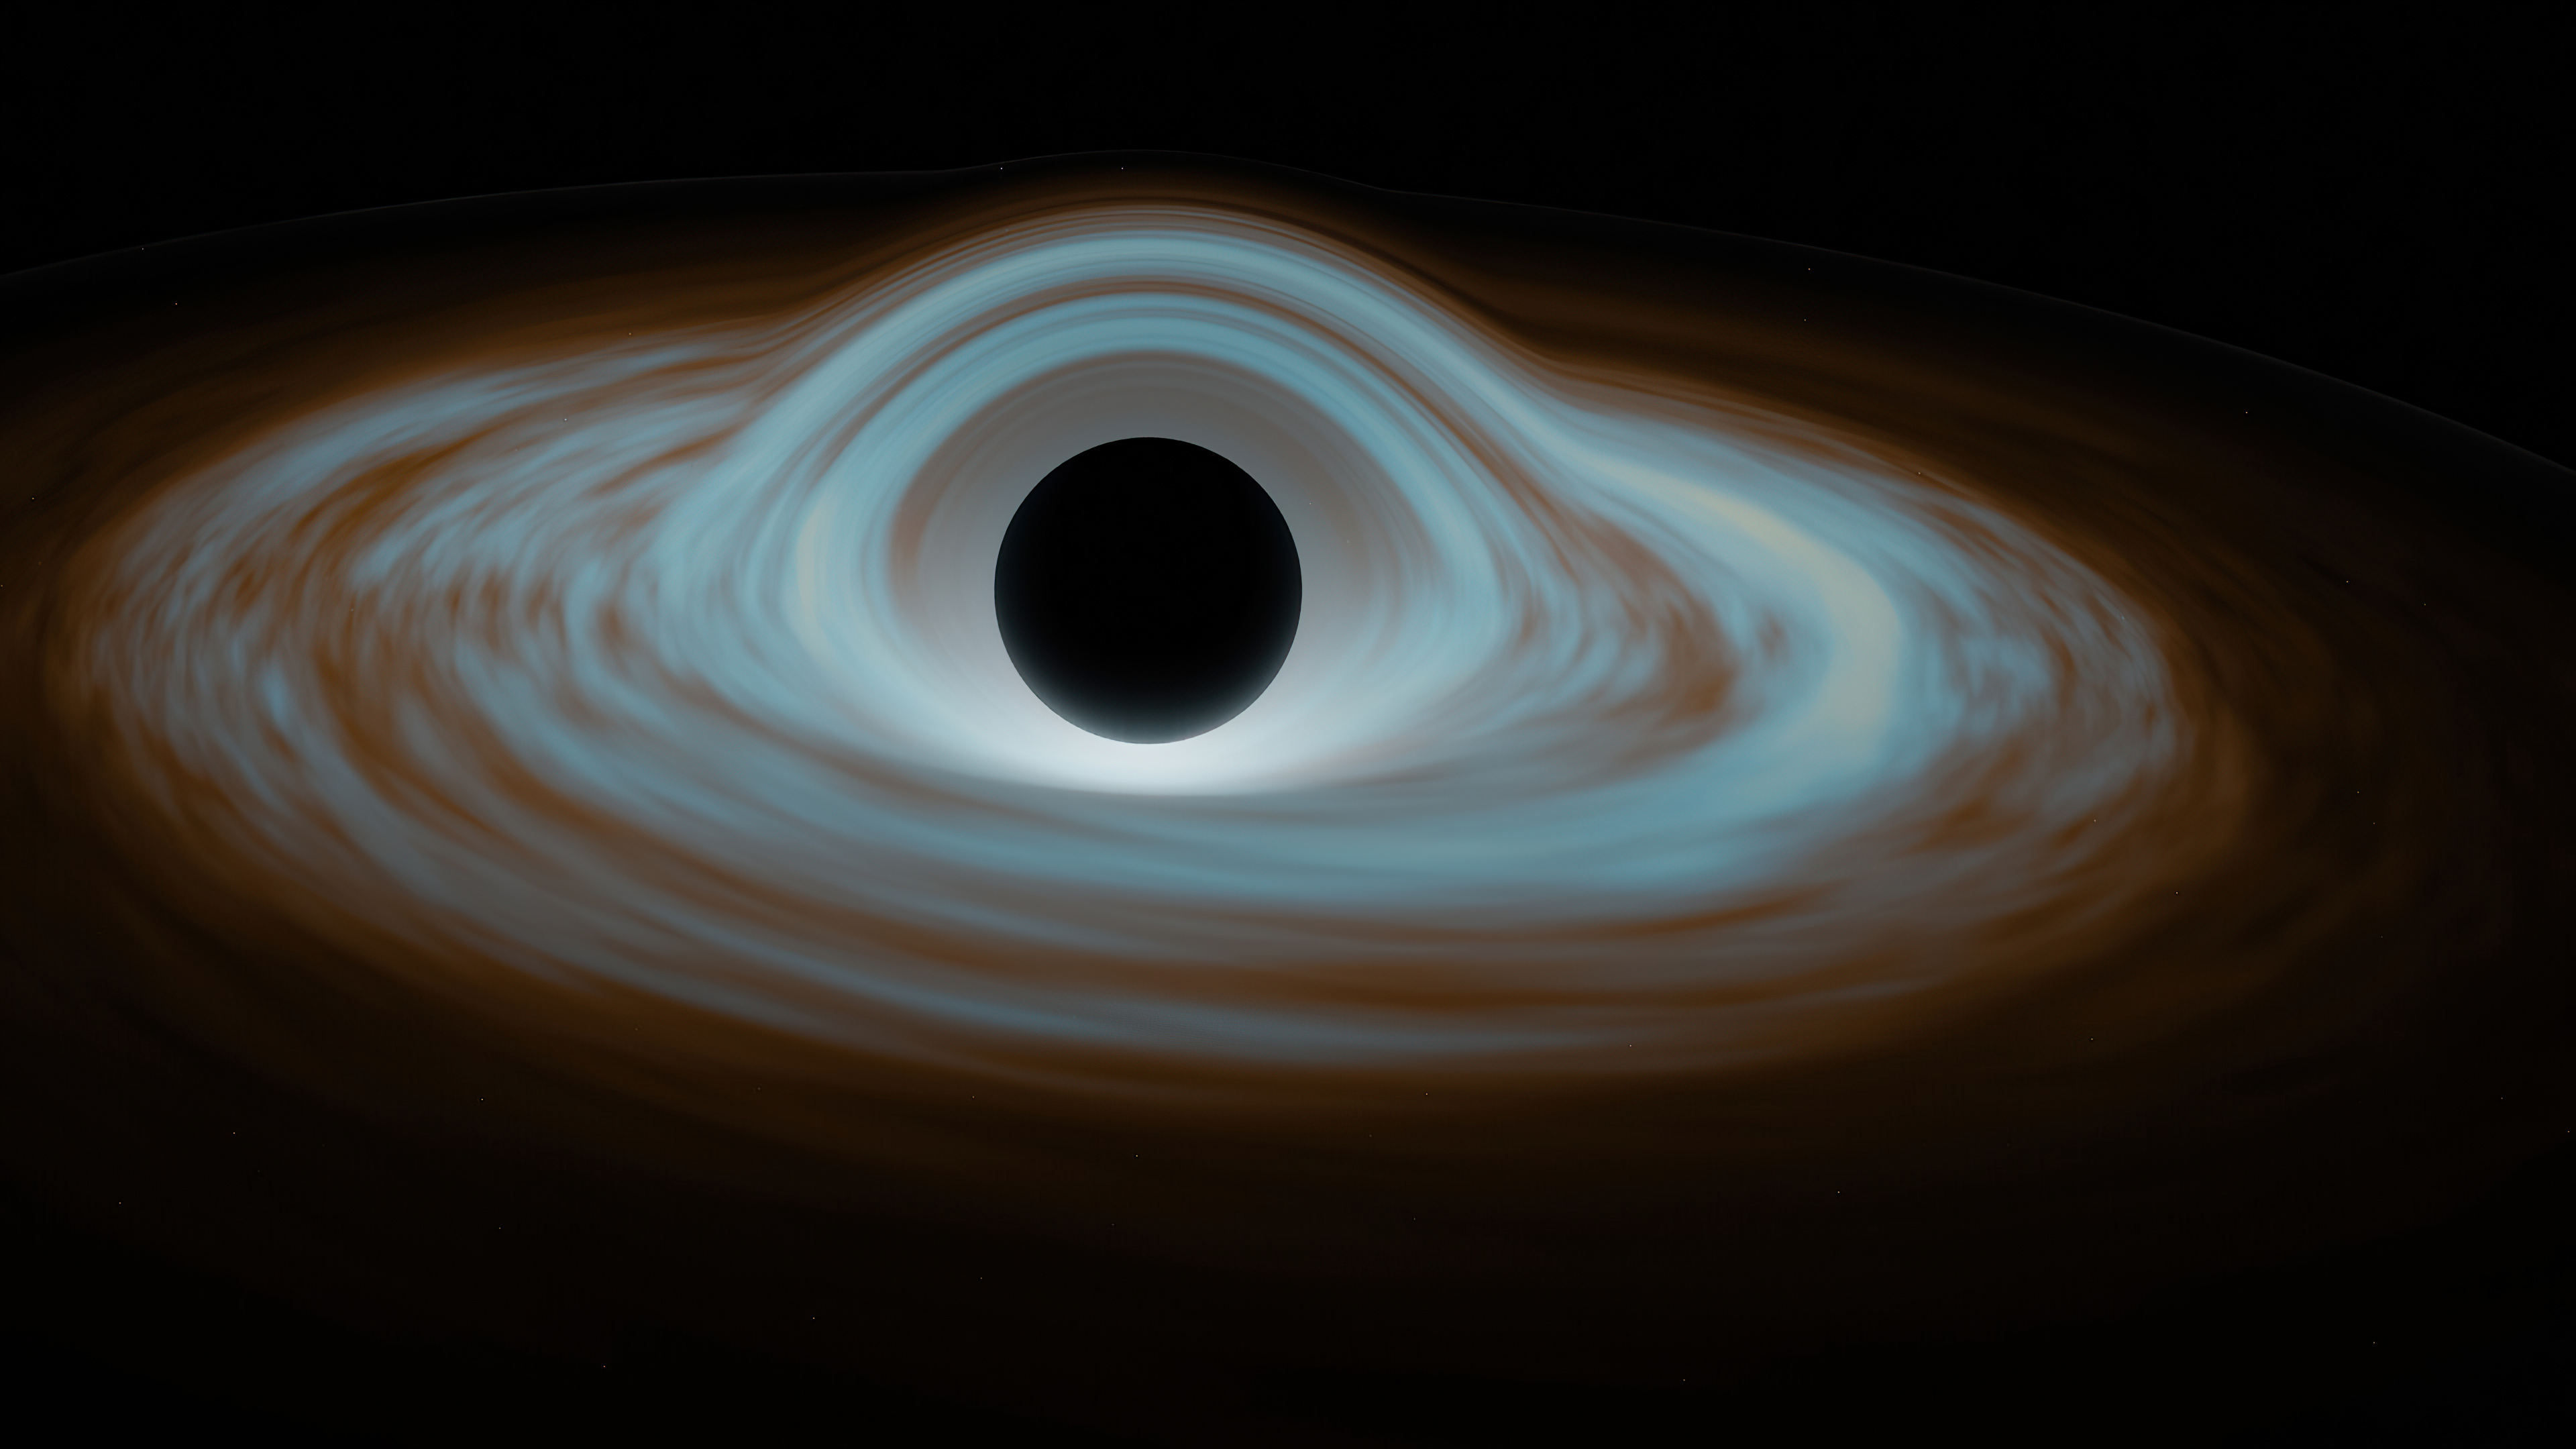 Sci Fi Black Hole 4k Ultra HD Wallpaper by Elliott Agger